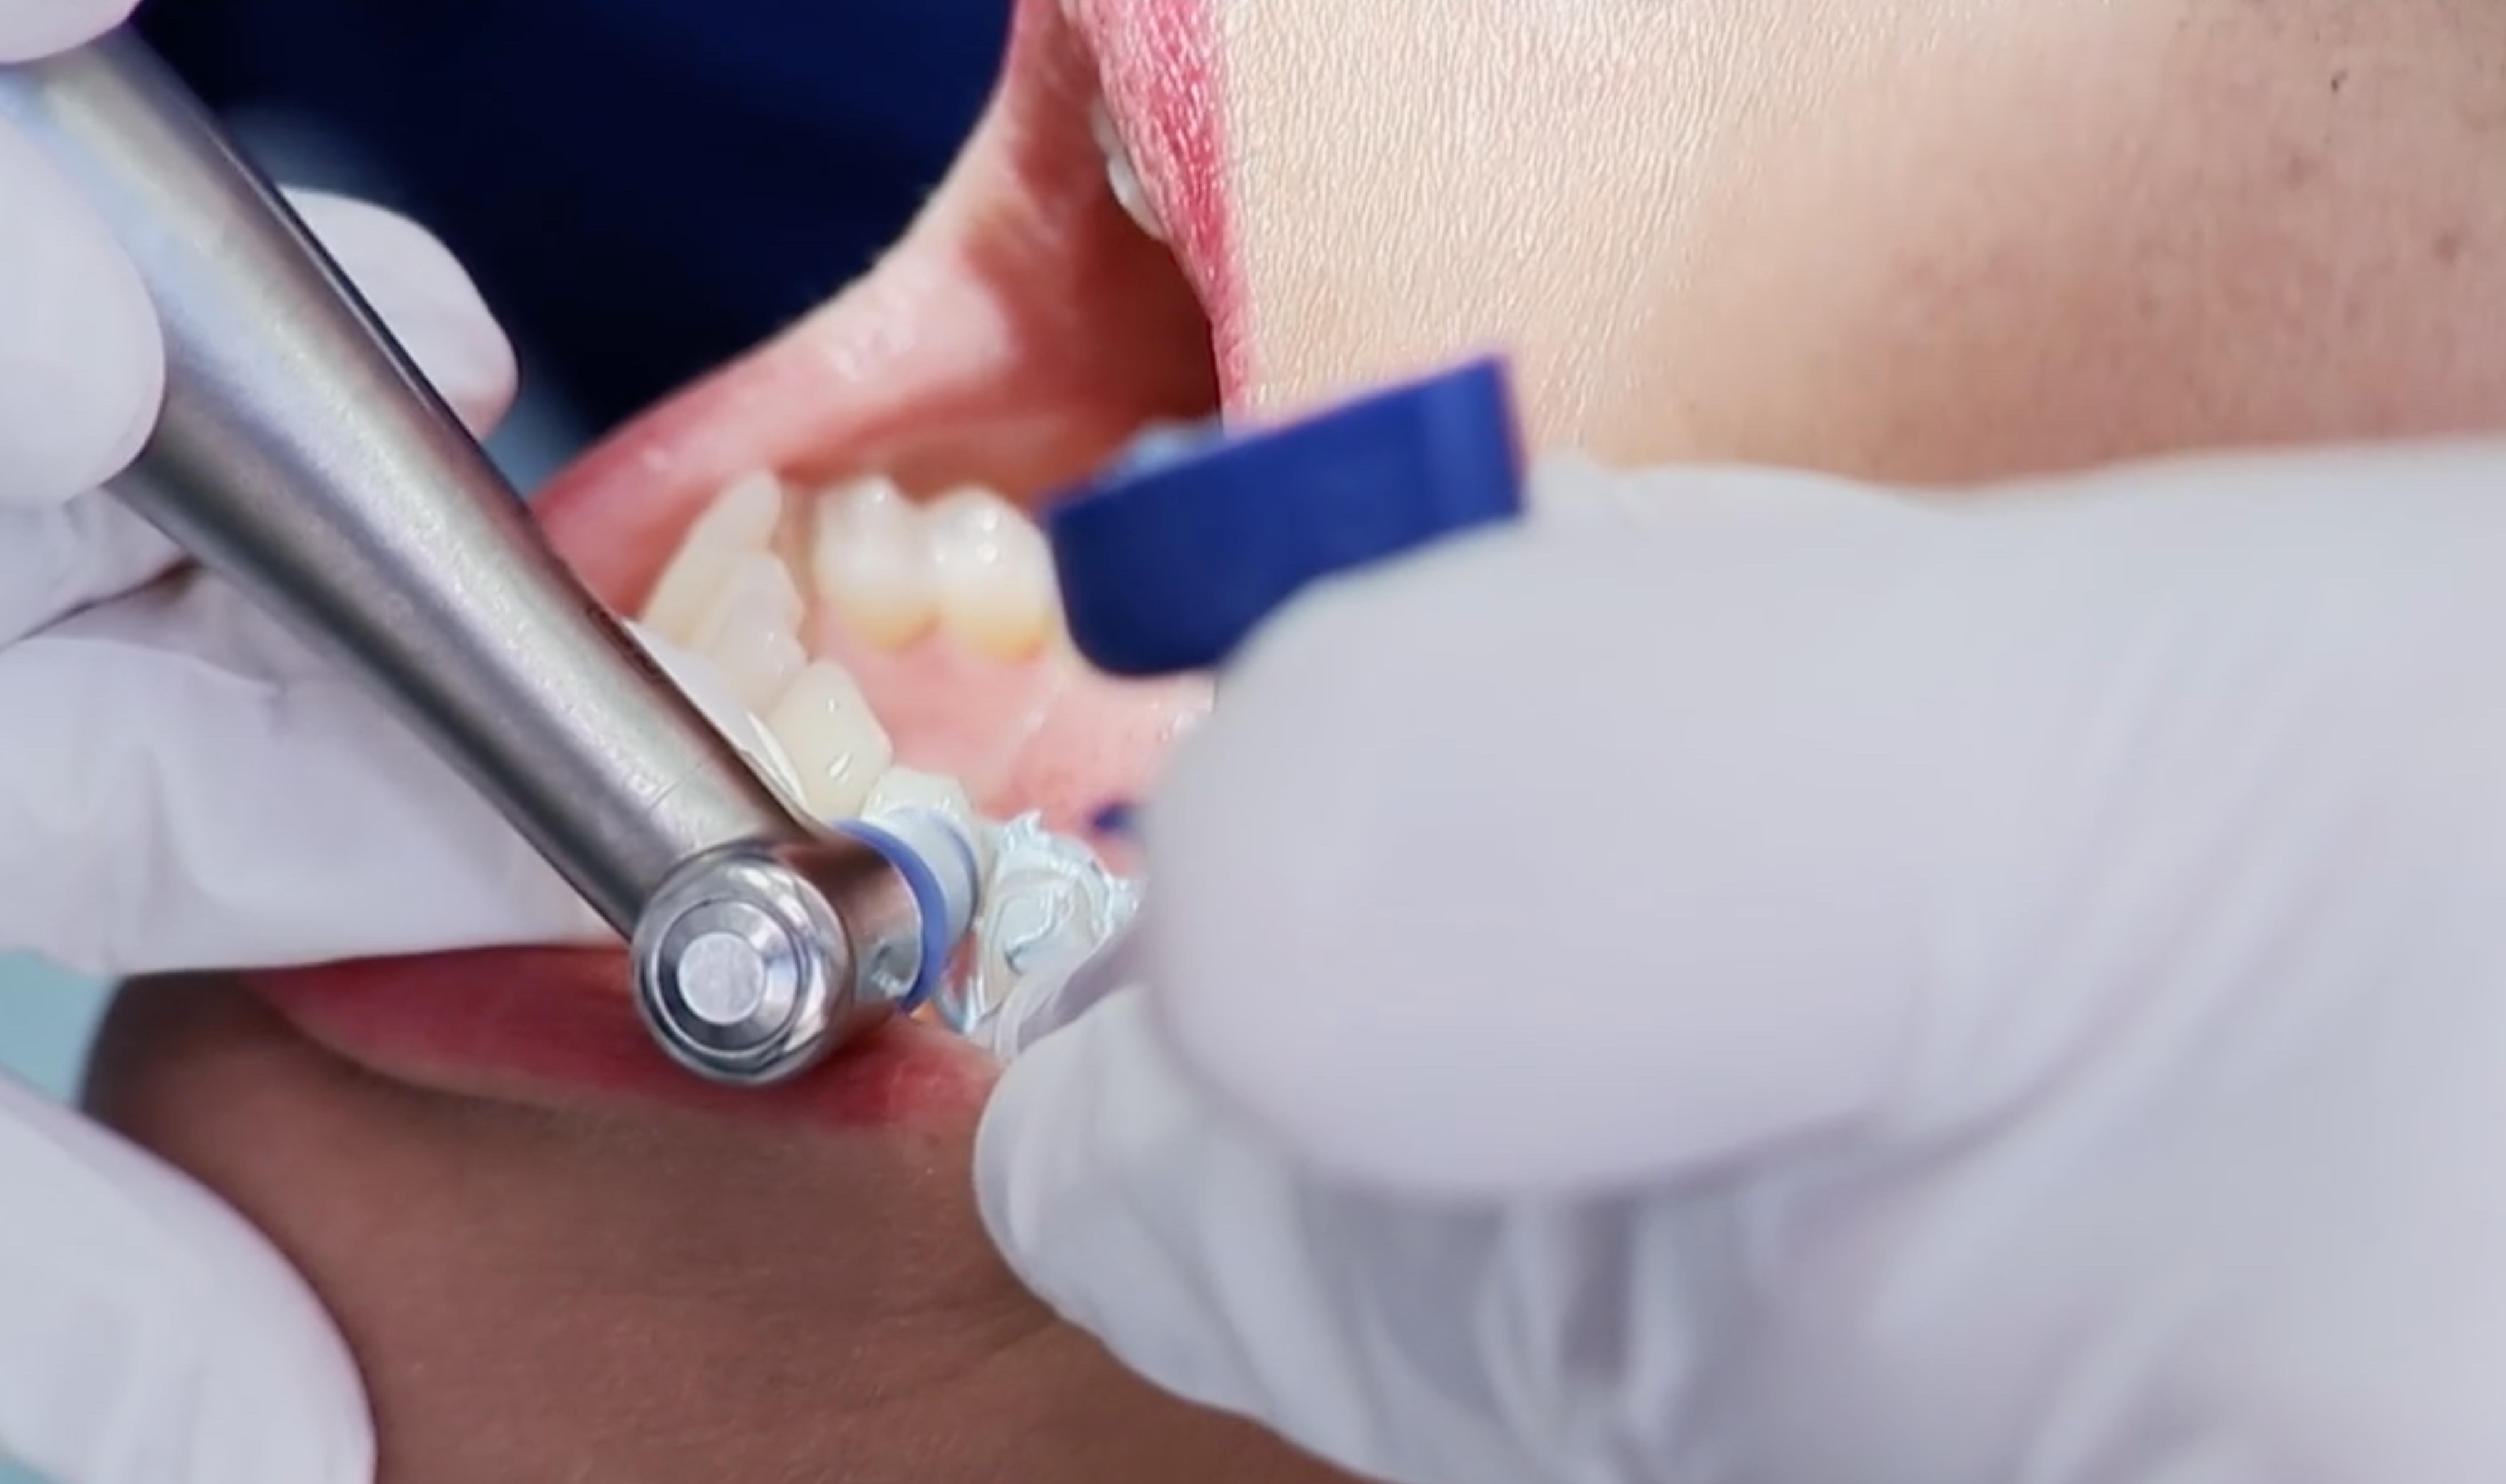 Professionelle Zahnreinigung Zahnarztpraxis Roger Barz Zahngesundheit Halle